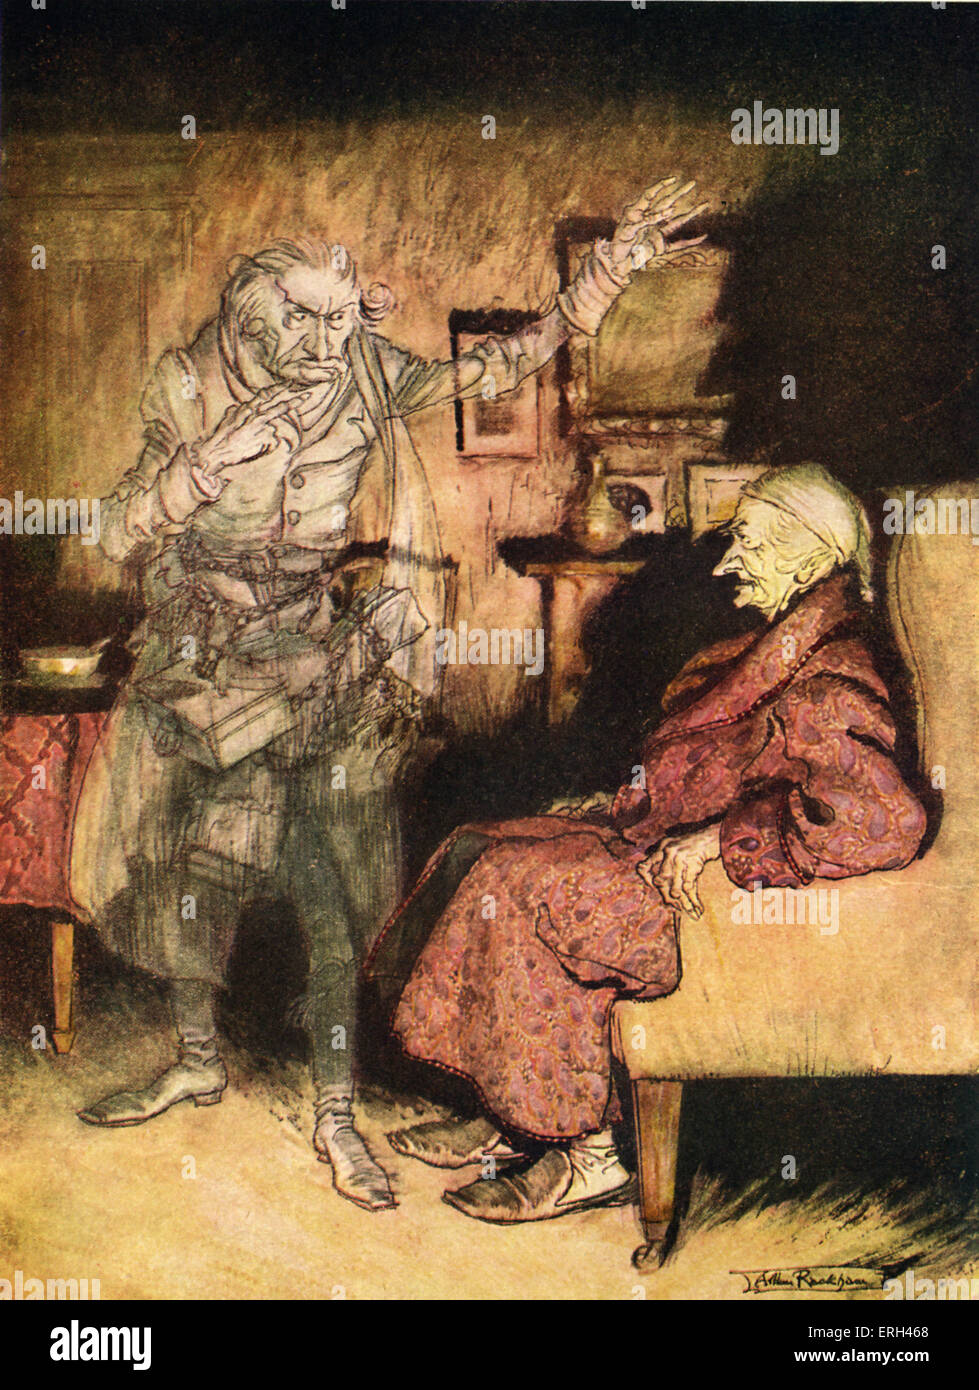 Charles Dickens 's "A Christmas Carol". "Cosa vuoi fare con me?' Scrooge viene visitato da Marley's ghost. Illustrazione di Arthur Rackham, 1867-1939. CD, romanziere inglese: 7 febbraio 1812 - 9 giugno 1870. Foto Stock